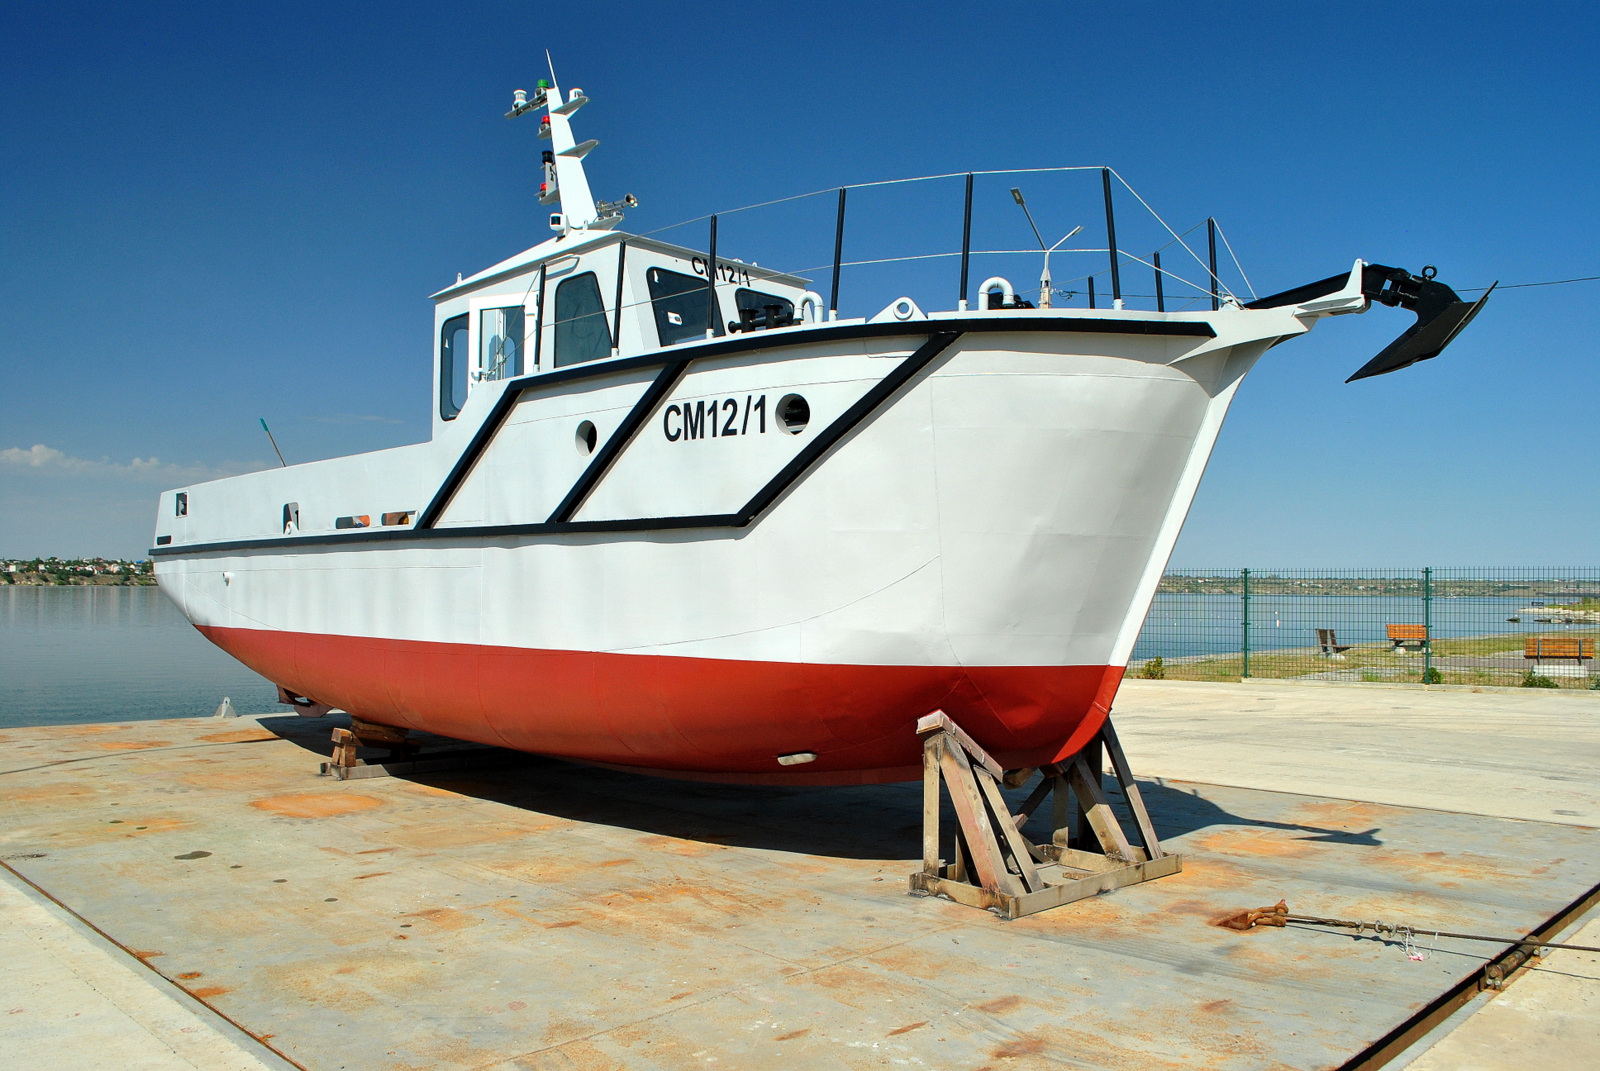 Продажа маломерного судна физическому лицу. Катер СМБ 25. СМБ 40 катер. Проект катера СМБ-40. Маломерное рыболовное судно АВП 12.